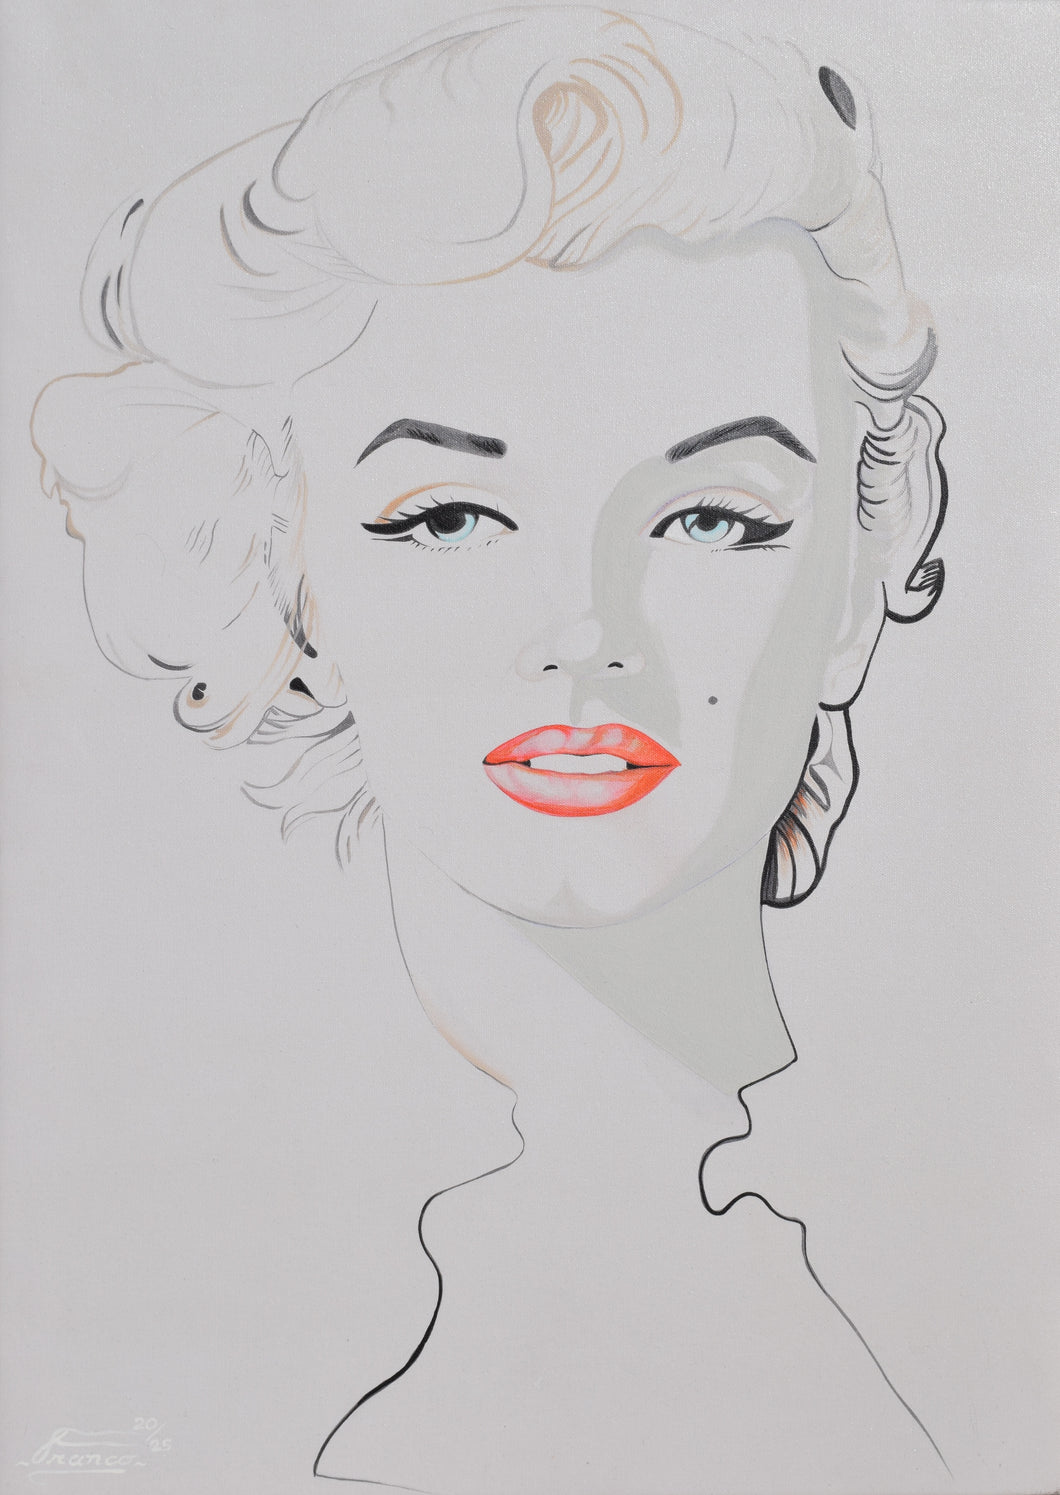 Marilyn Monroe l 48 x 36 in. l Acrylic on canvas.